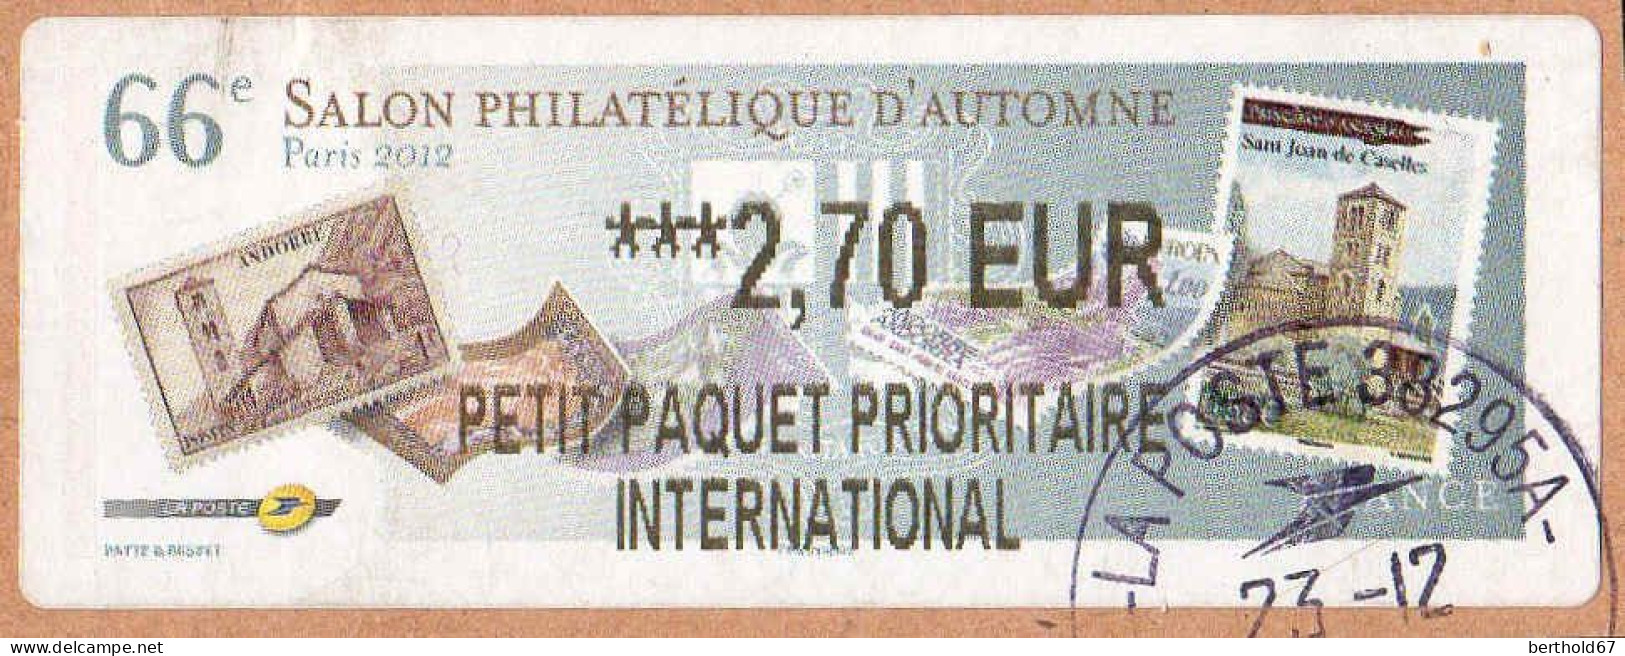 France Lisa Obl 2001 Salon Philatélique D'Automne (TB Cachet Rond) ***2,70 EUR Sur Fragment - 2010-... Illustrated Franking Labels